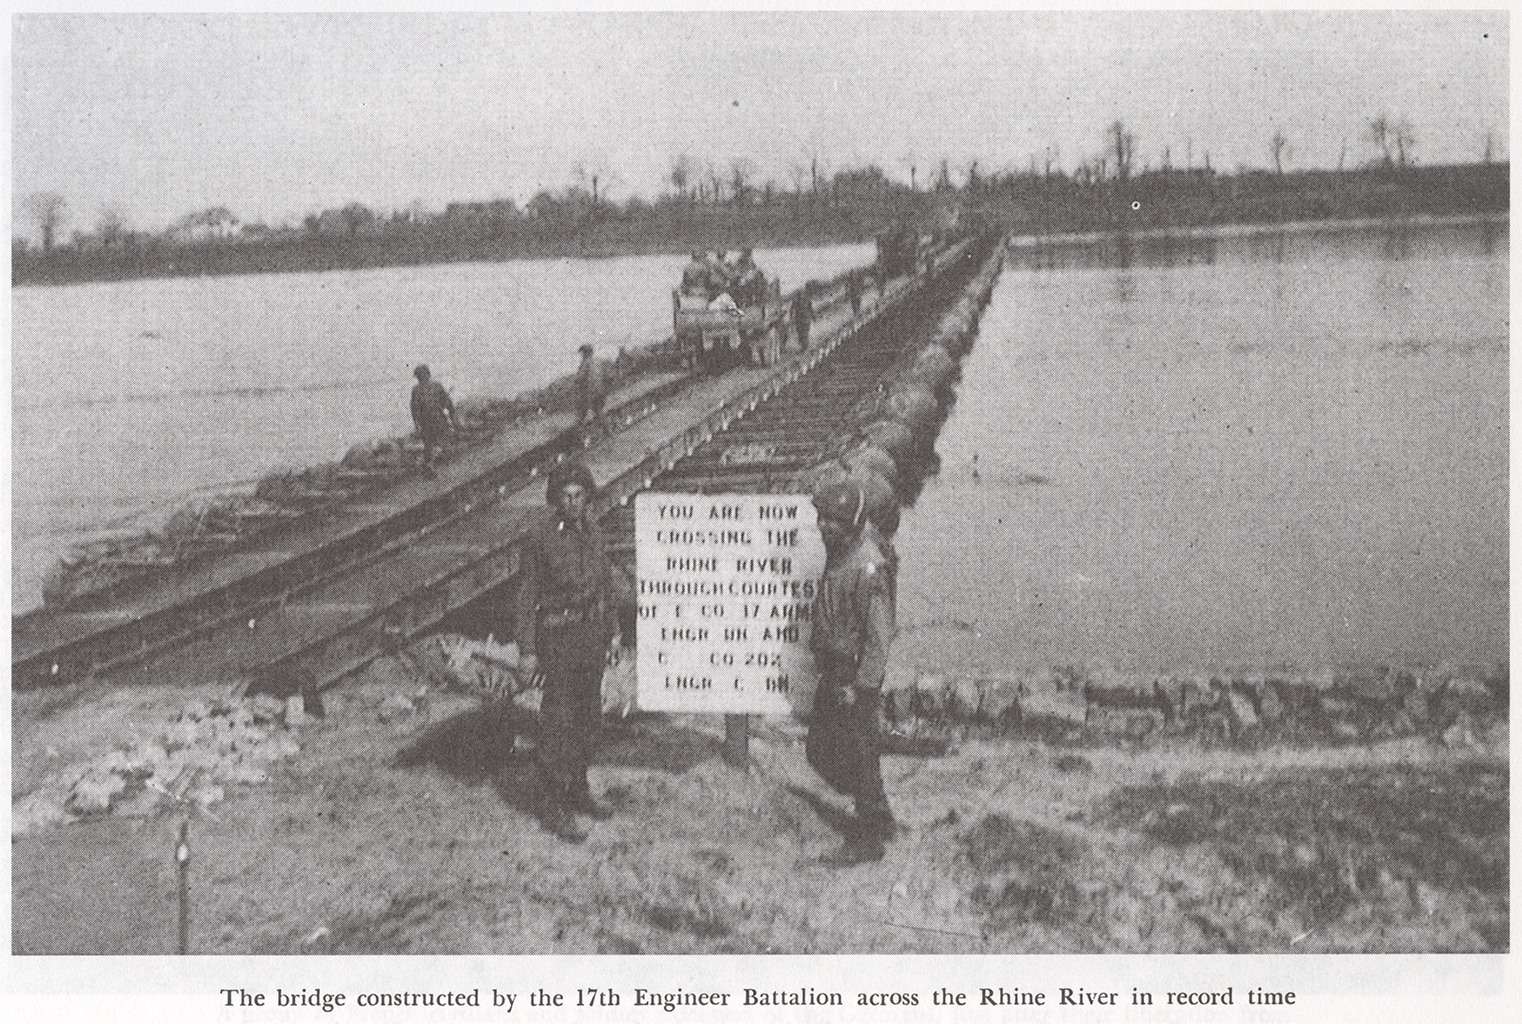 Bridge Rhine River 17th AEB in record time, Unit History